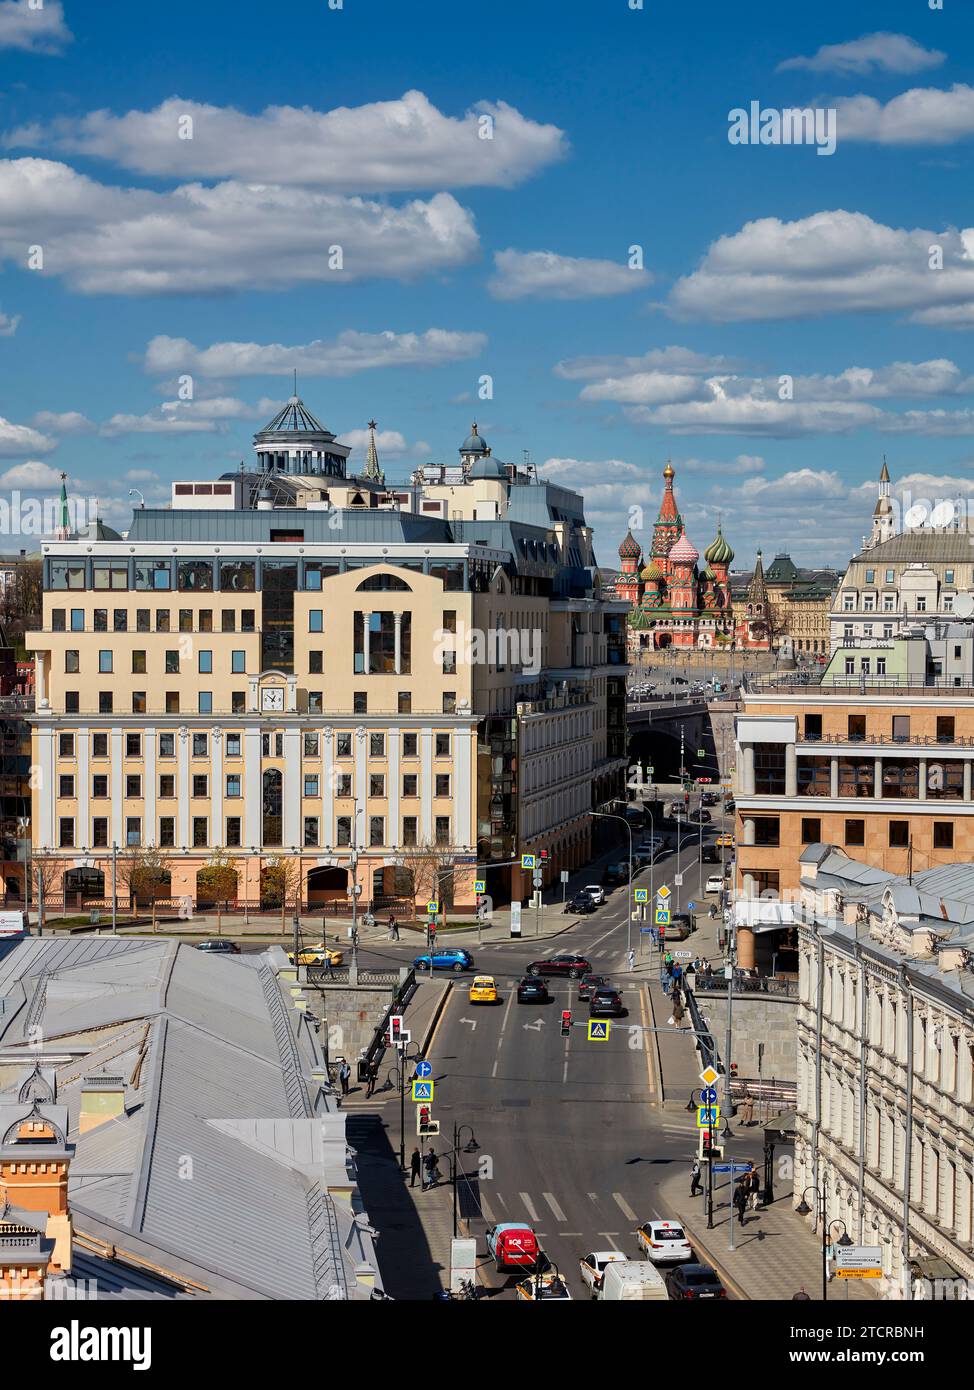 Vue aérienne du quartier de Zamoskvorechye avec la cathédrale Saint-Basile en arrière-plan. Moscou, Fédération de Russie. Banque D'Images